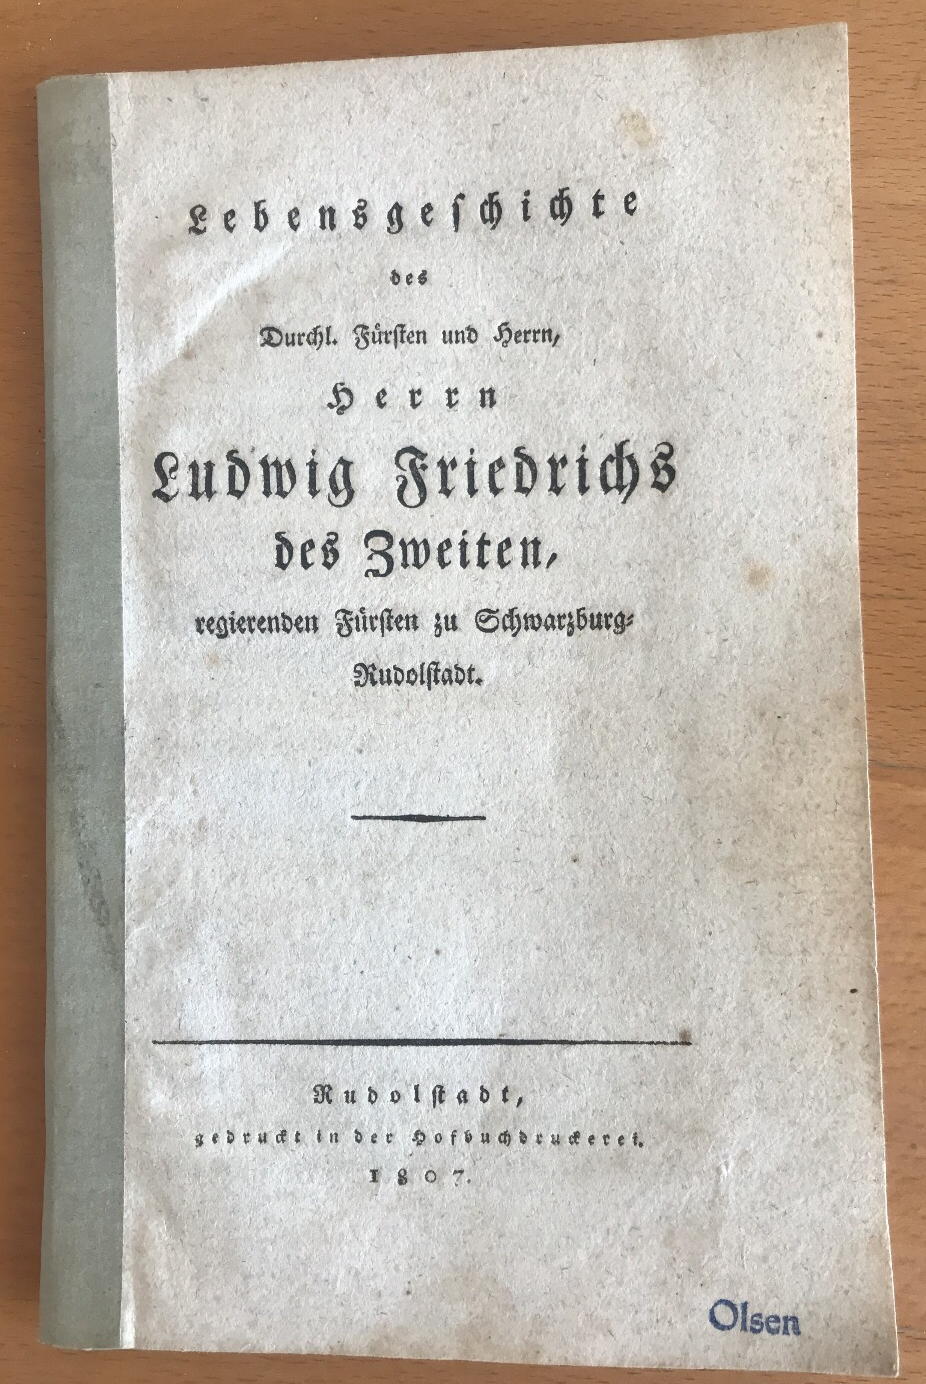  - Lebensgeschichte des Durchl. Frsten und Herrn, Herrn Ludwig Friedrichs des Zweiten, regierenden Frsten zu Schwarzburg-Rudolstadt..